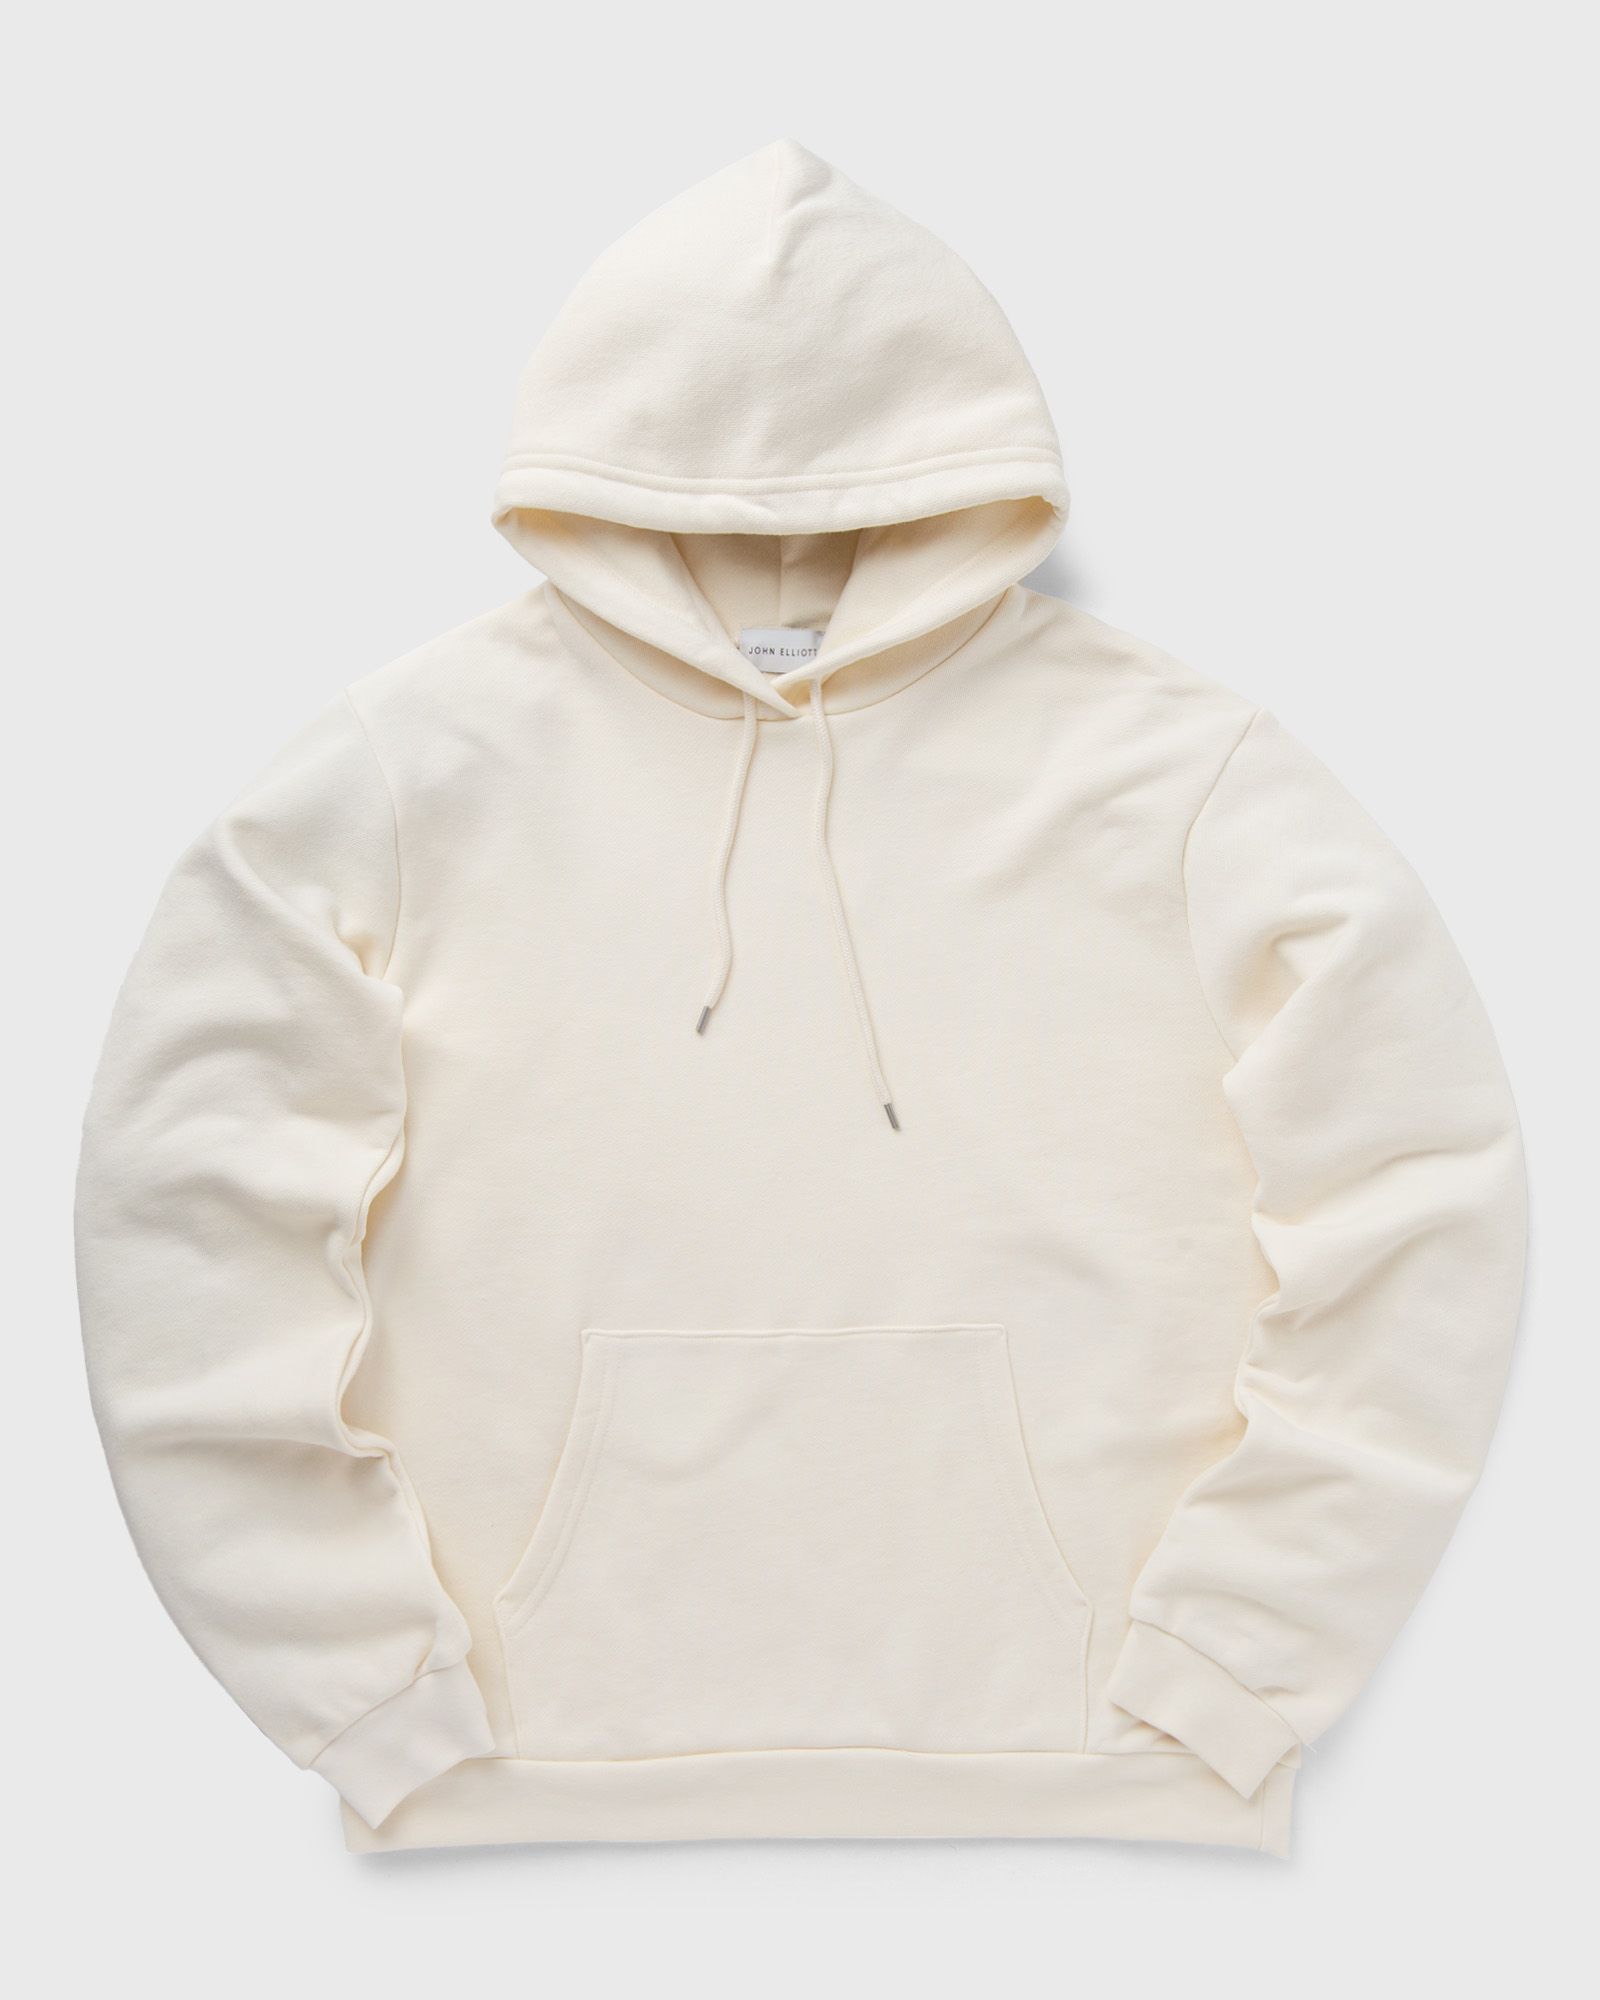 John Elliott - beach hoodie men hoodies white in größe:s